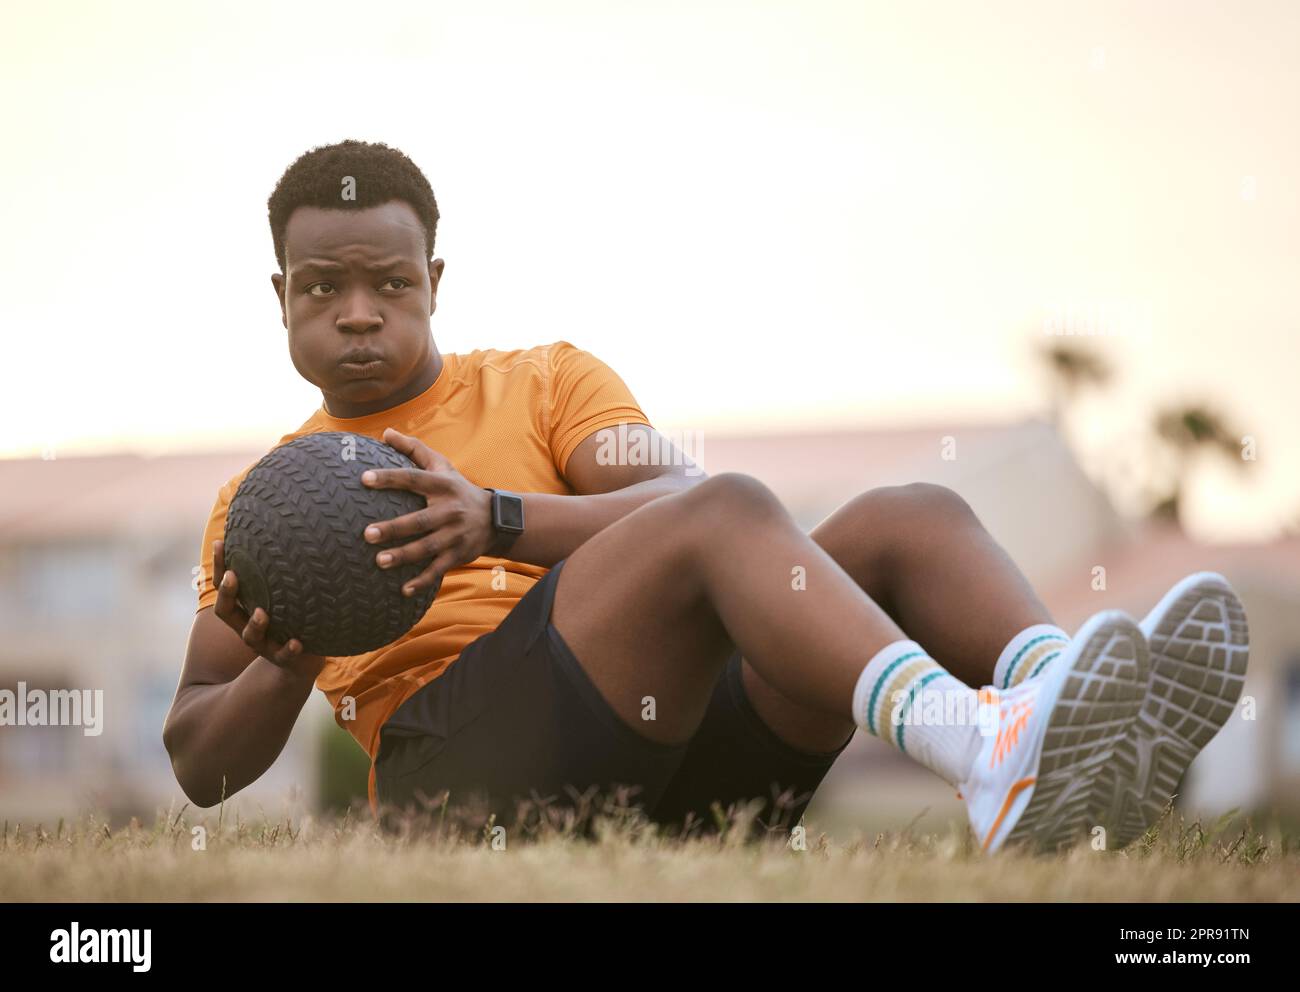 Un uomo sportivo che si allena, lavora sulla sua forma fisica. Un atleta afro-americano che usa una palla medica, che vive uno stile di vita attivo e sano, seduto sull'erba a fare sedute Foto Stock